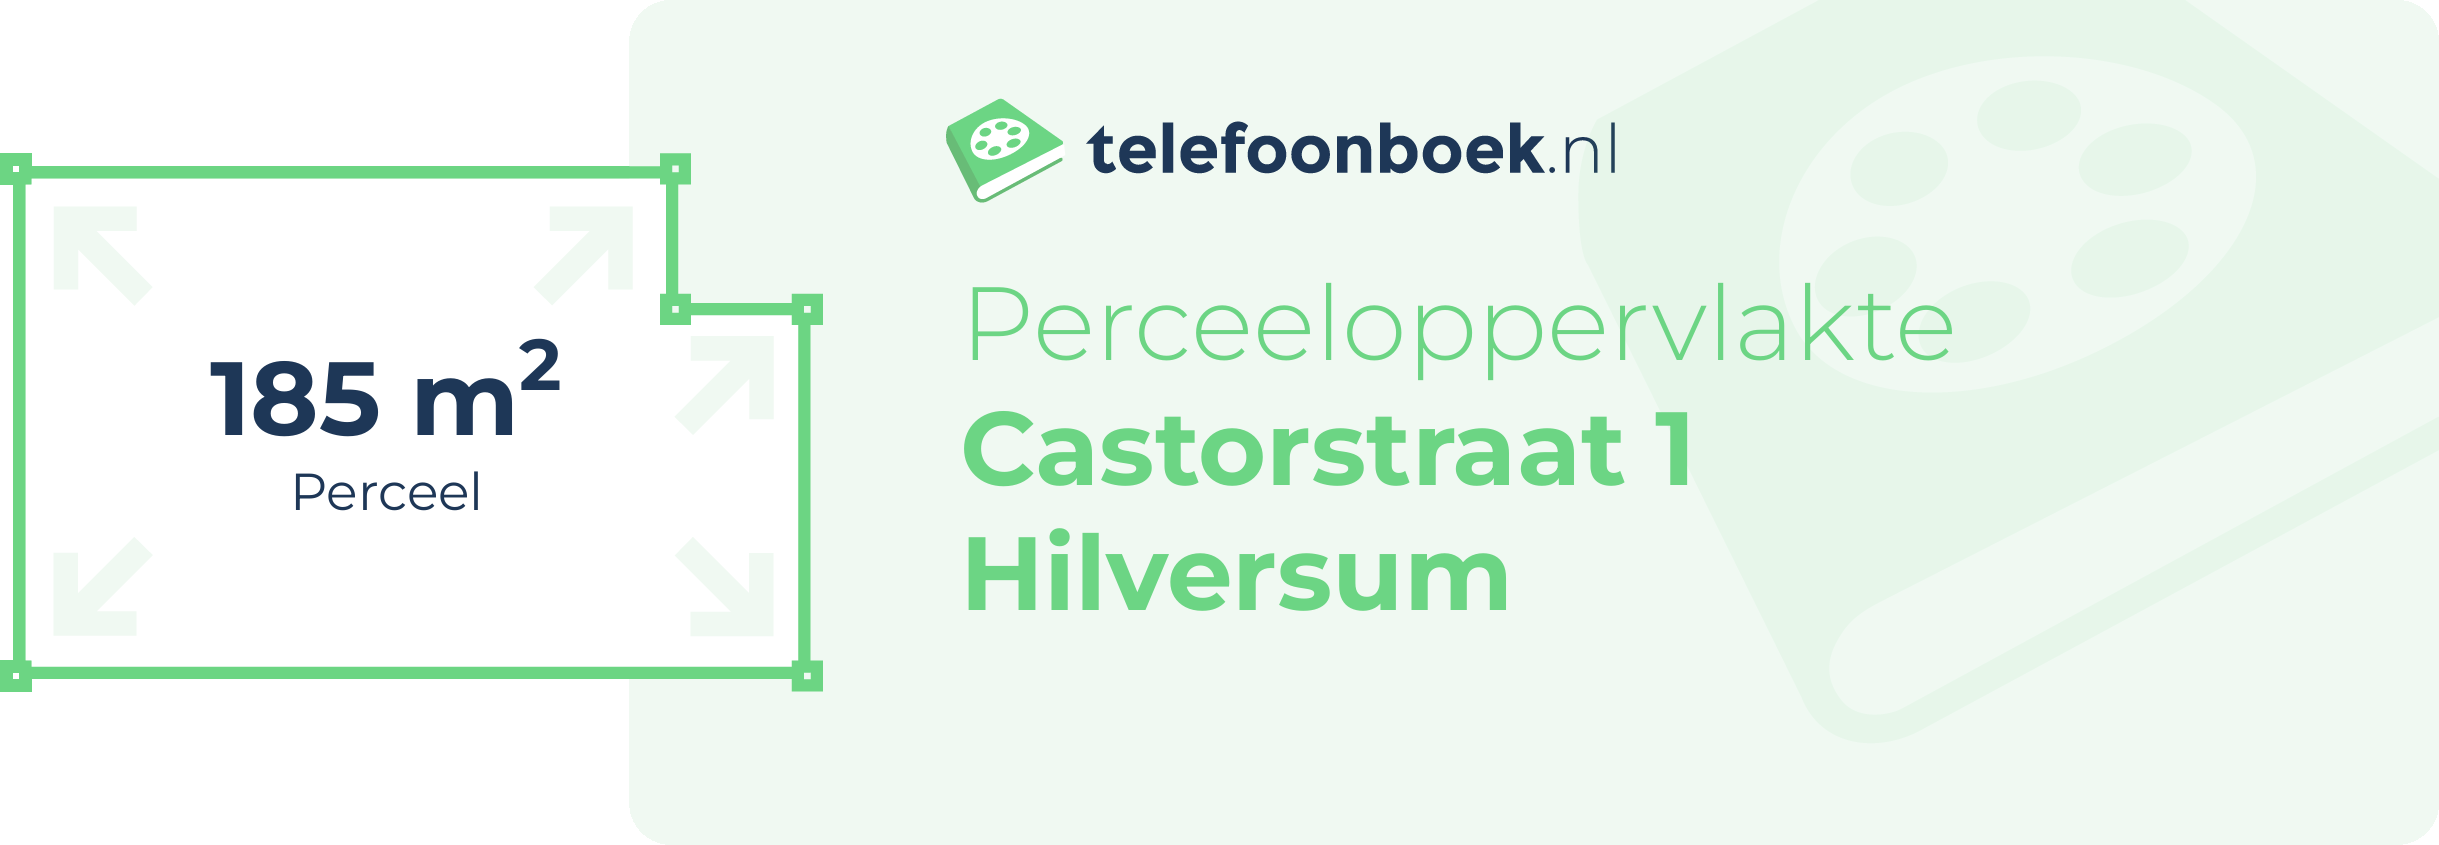 Perceeloppervlakte Castorstraat 1 Hilversum